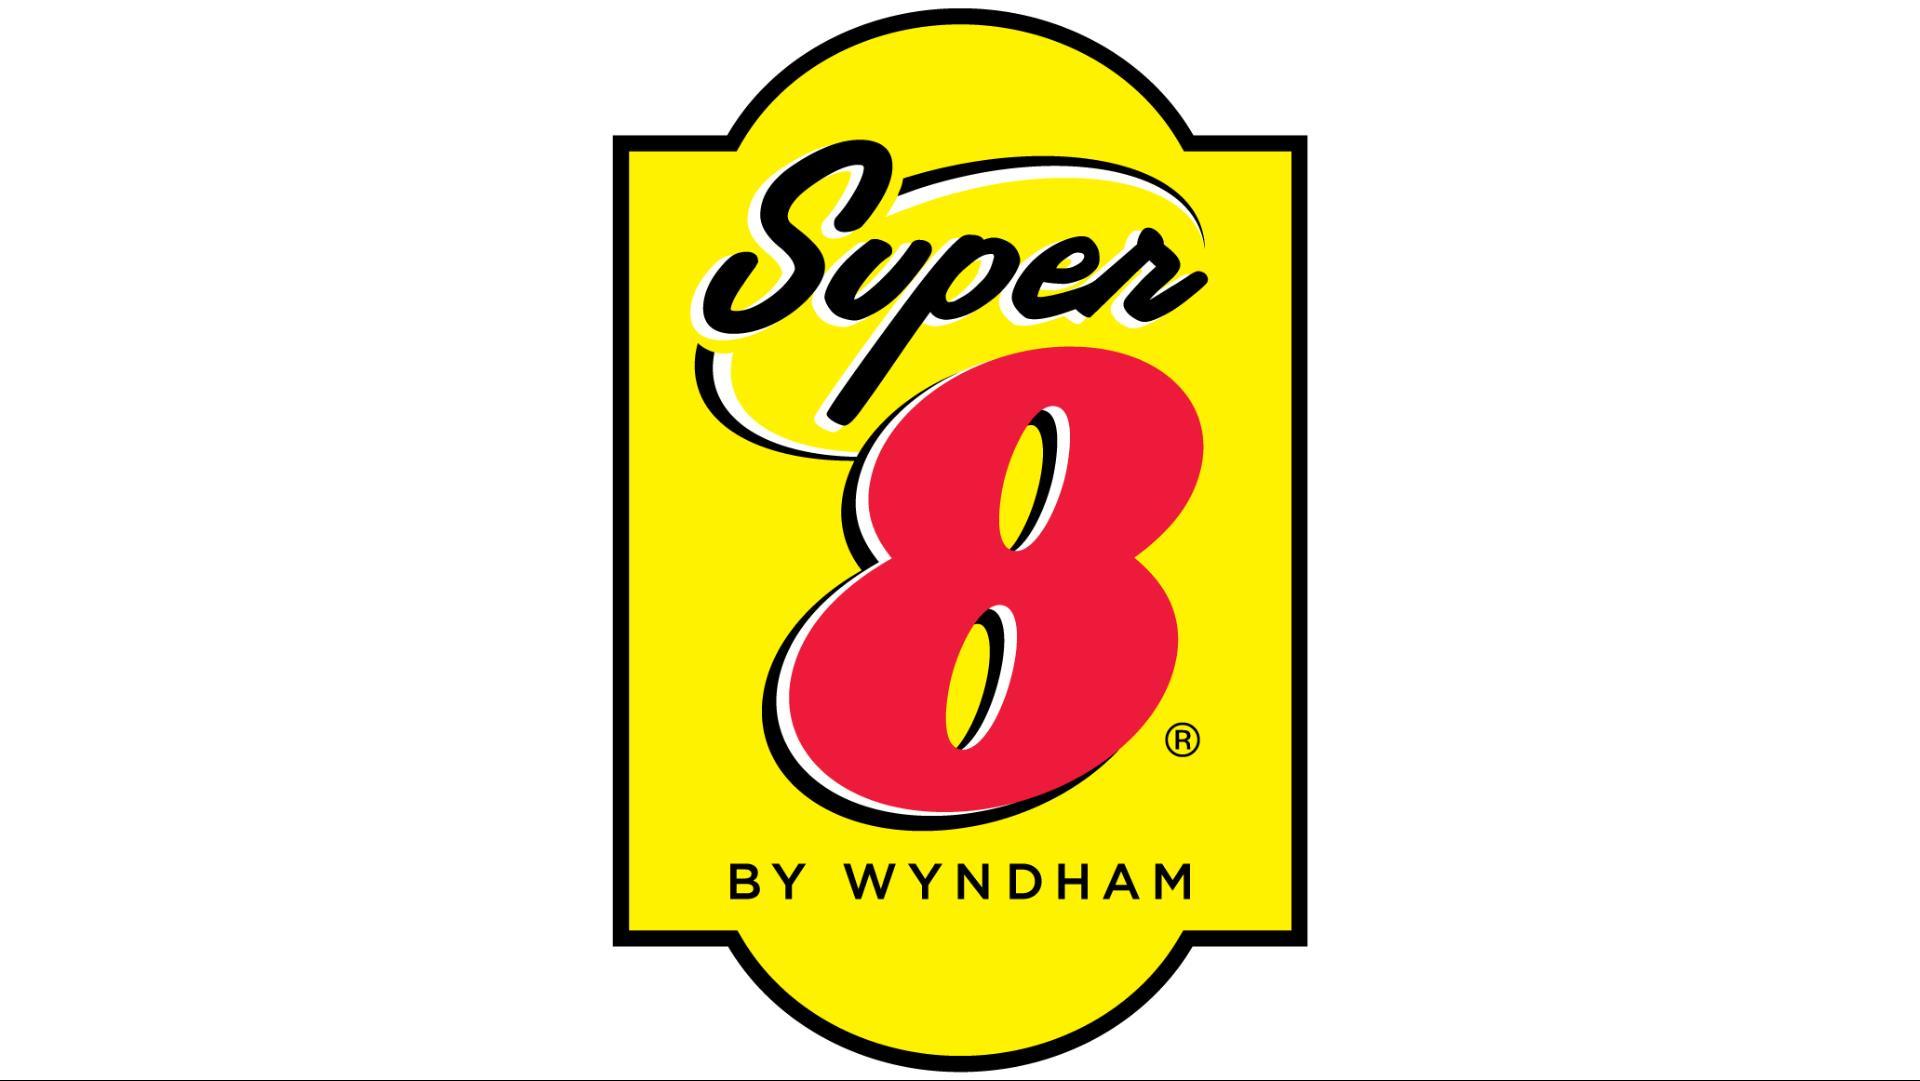 Super 8 by Wyndham St. Regis in St. Regis, MT